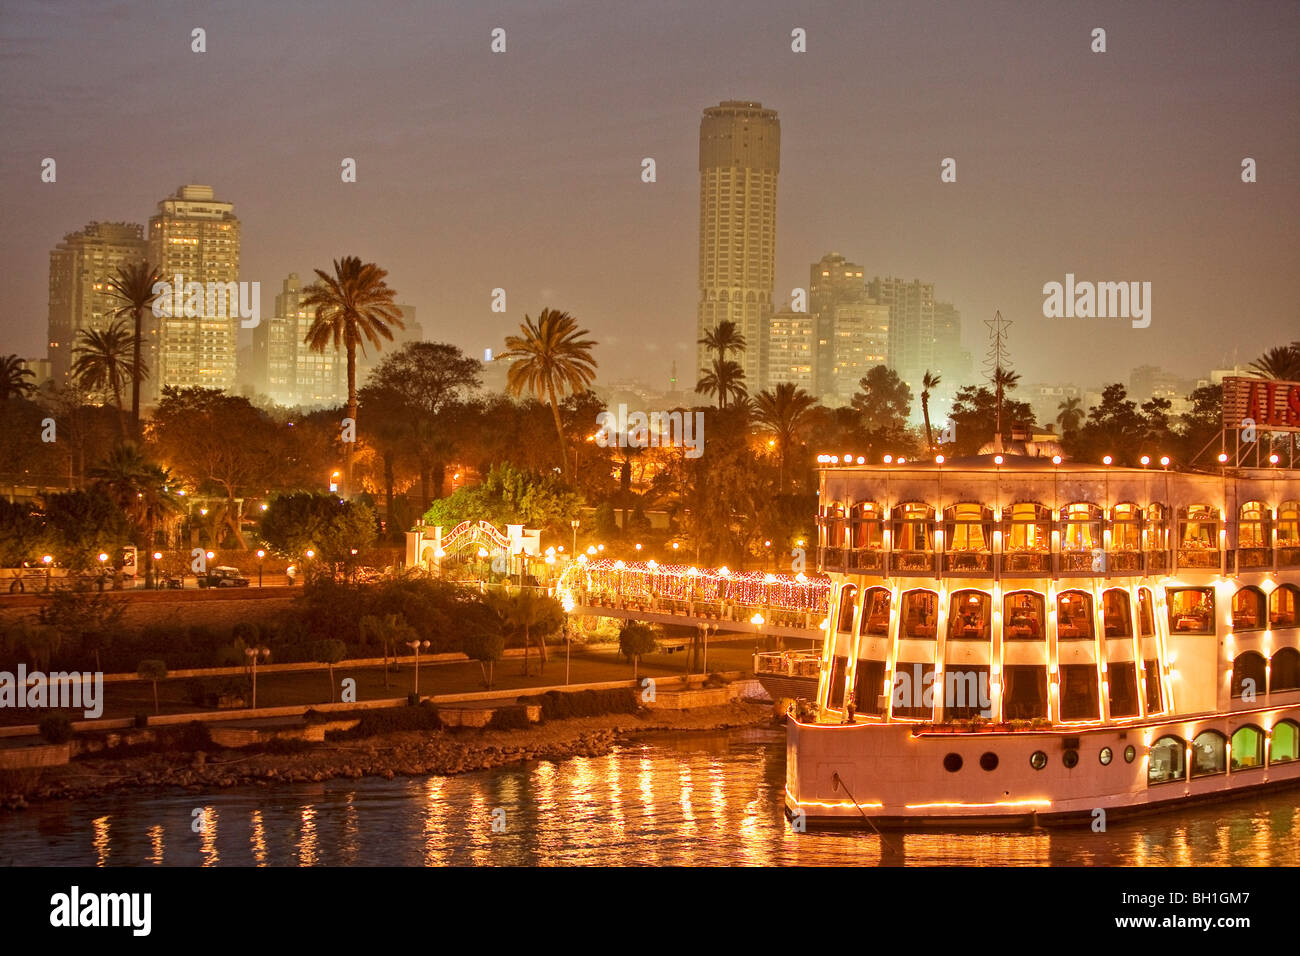 Beleuchtetes Schiff auf dem Nil vor Palmen und hohen Aufstieg Gebäude, Kairo, Ägypten, Afrika Stockfoto